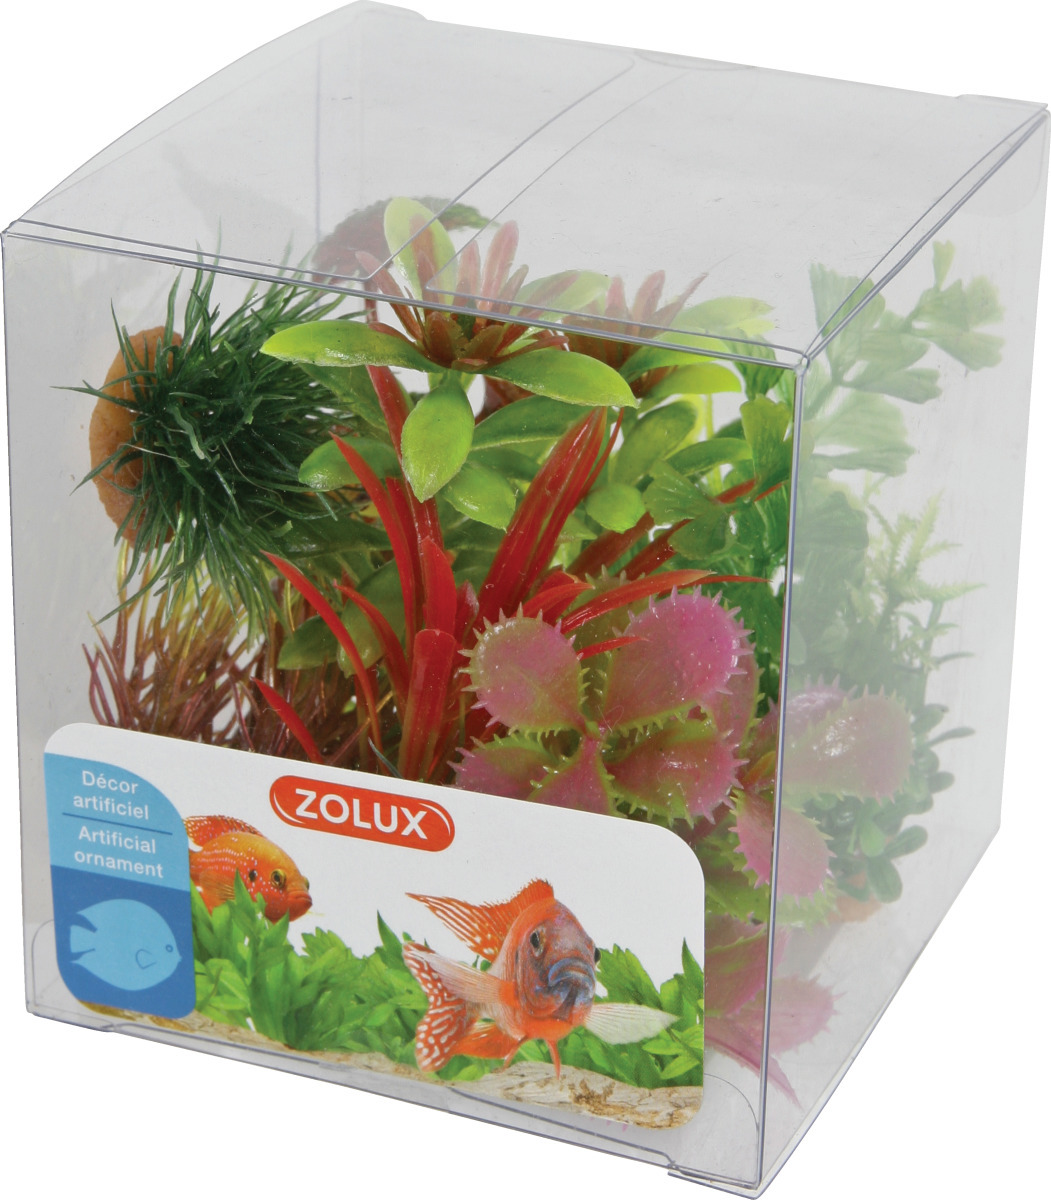 ZOLUX Boîte Mix 1 - Lot de 6 petites plantes artificielles 4 à 10 cm pour aquarium